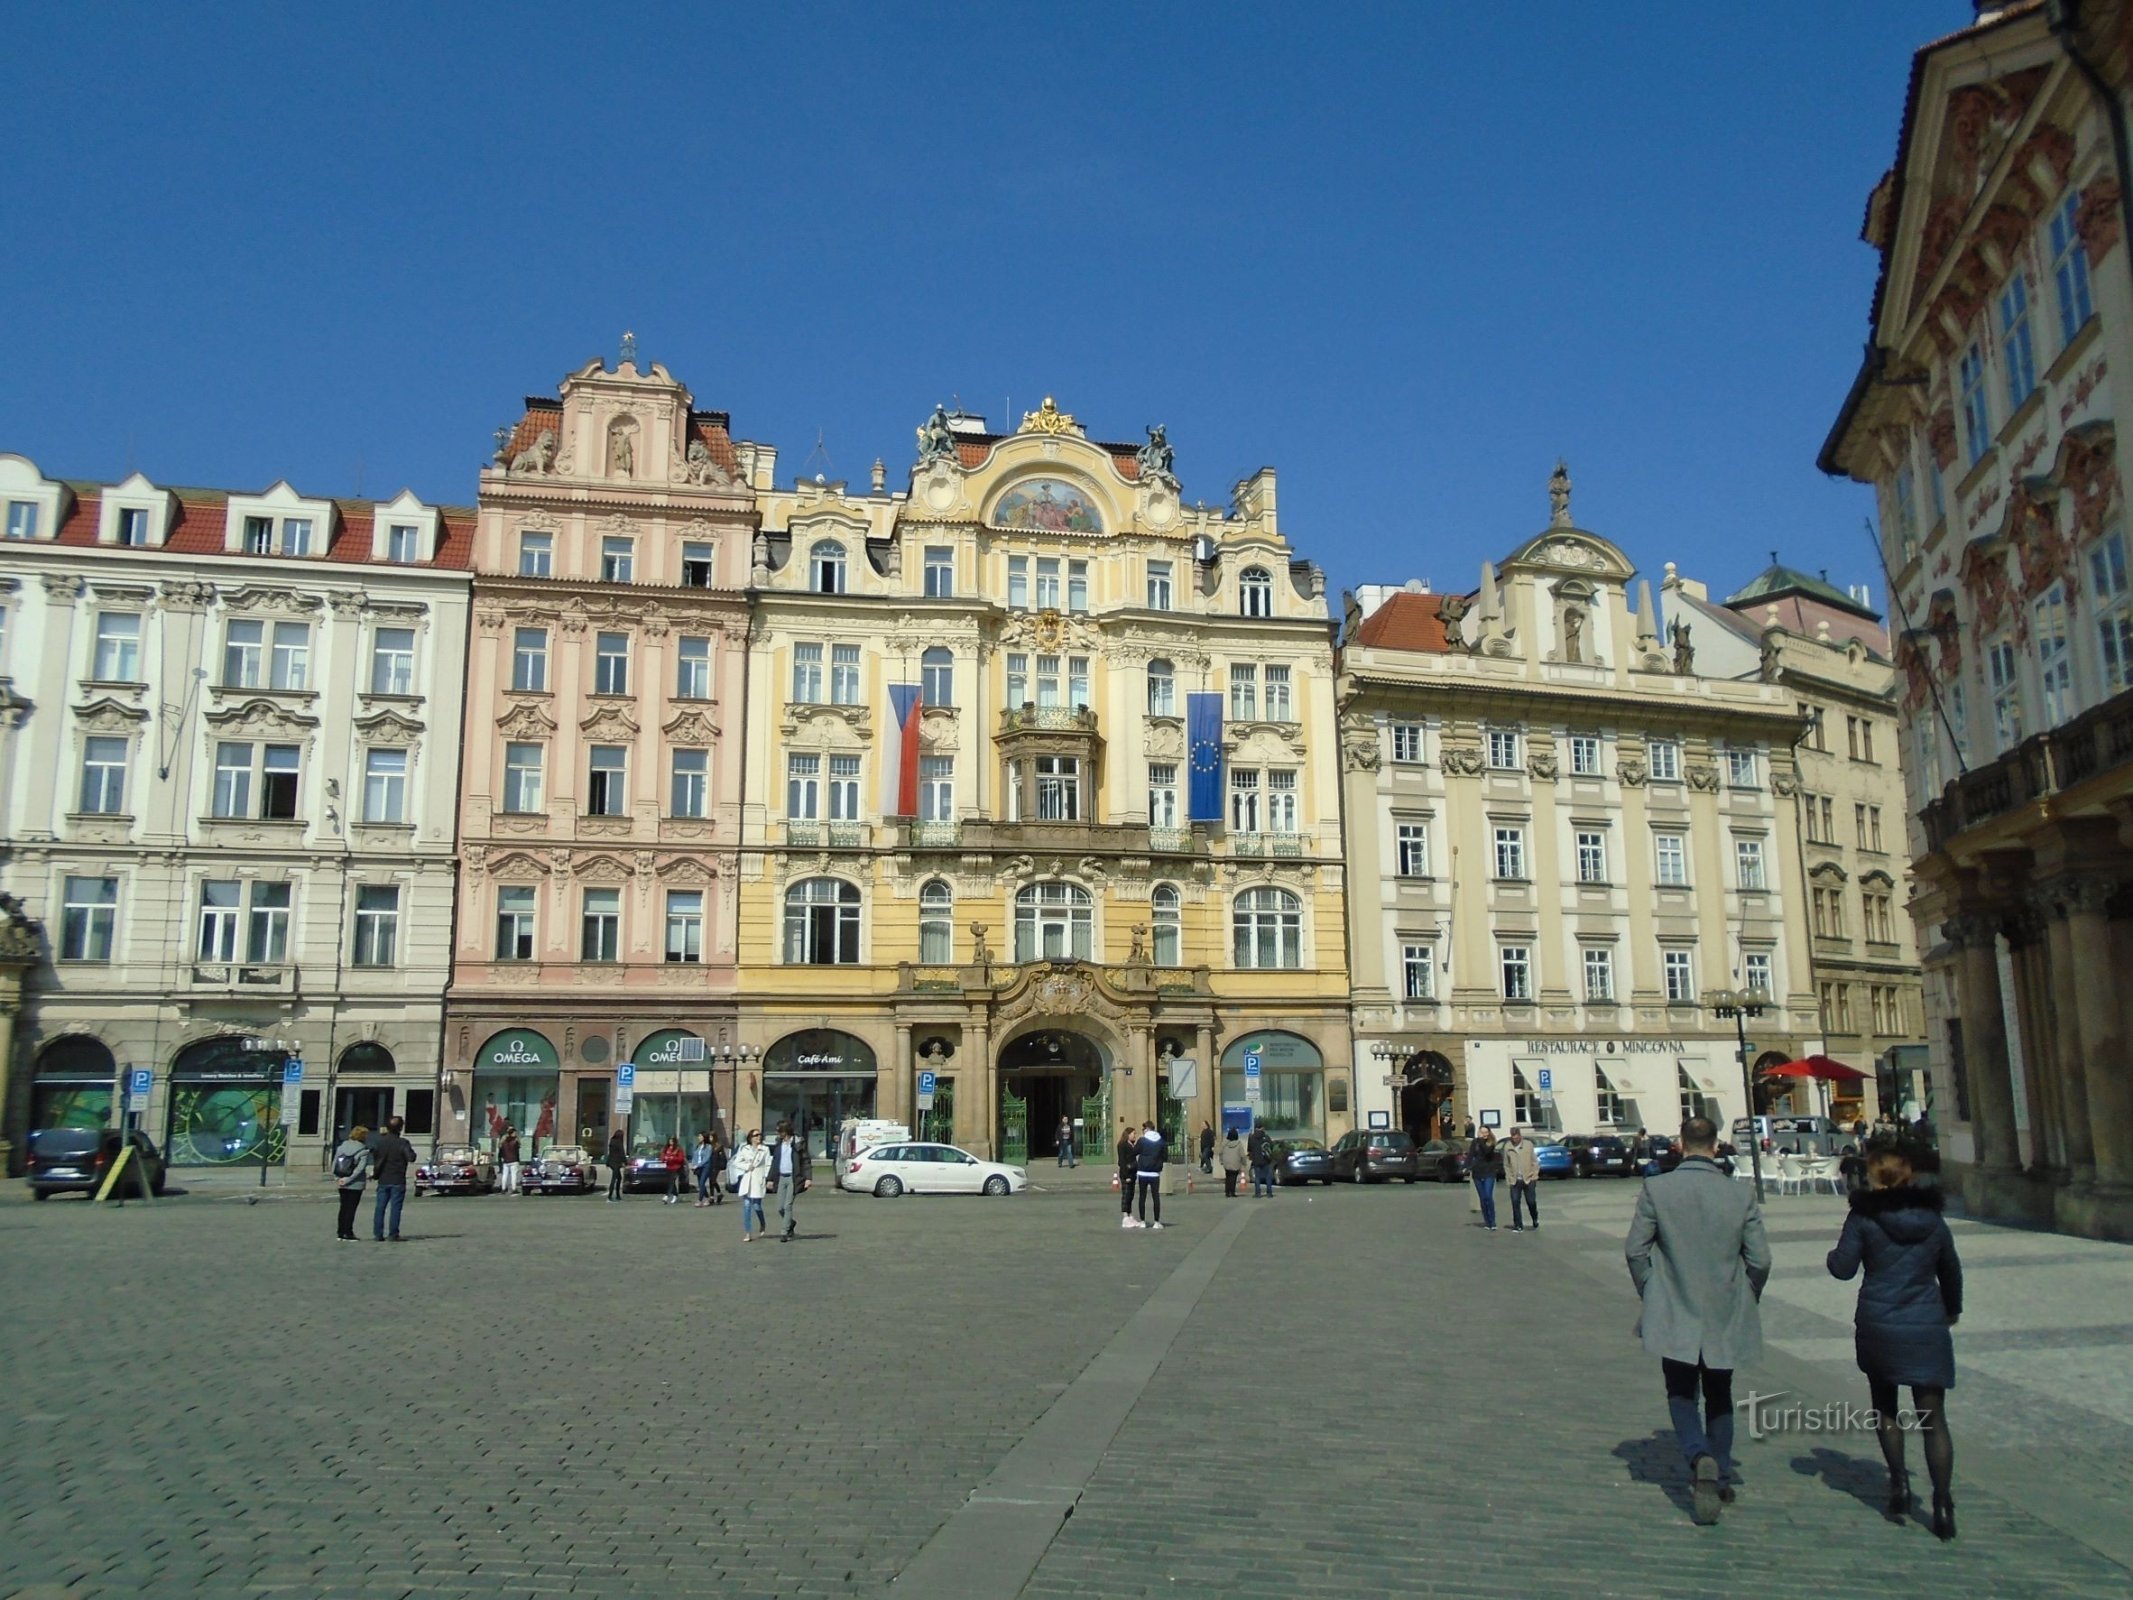 Praça da Cidade Velha nº 932 (Praga, 1.4.2019 de abril de XNUMX)